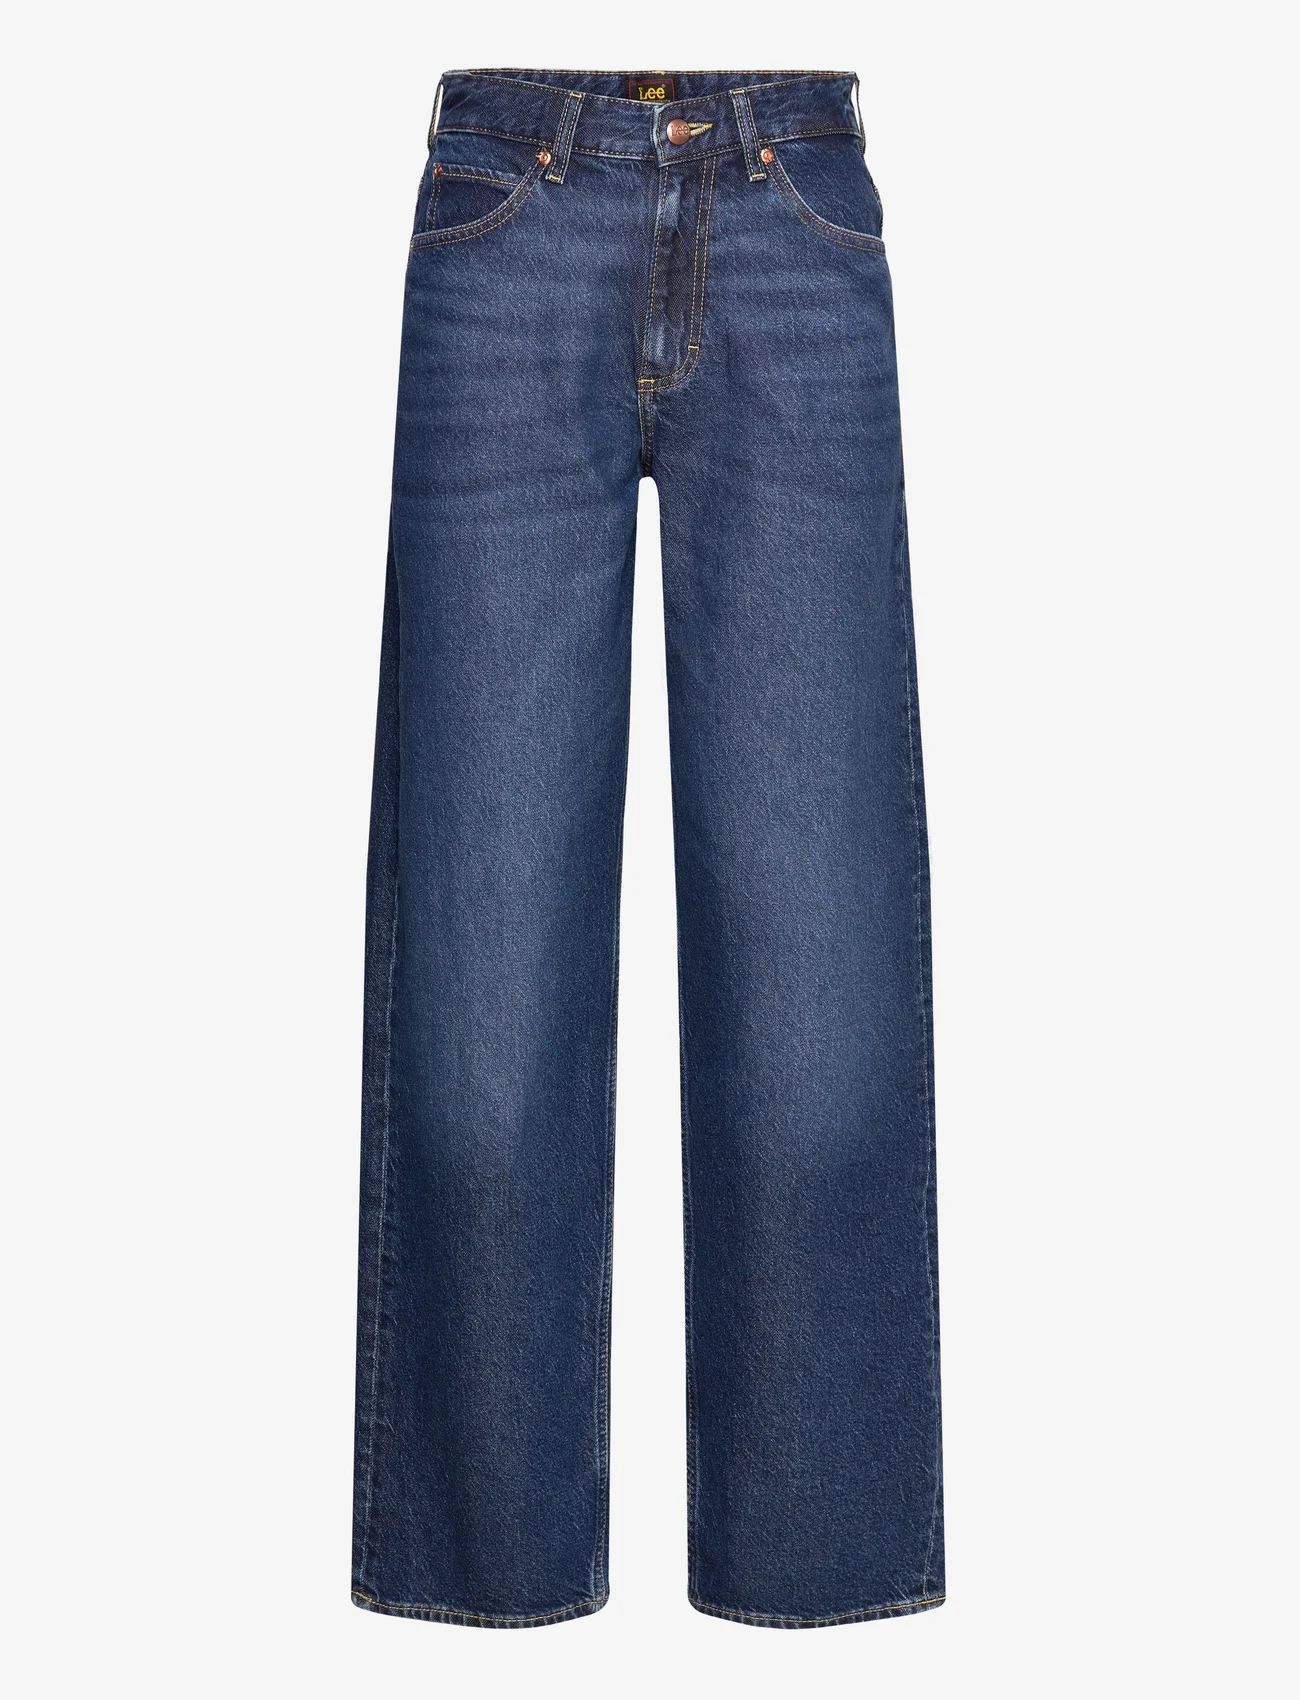 Lee Jeans - RIDER LOOSE - tiesaus kirpimo džinsai - blue nostalgia - 0